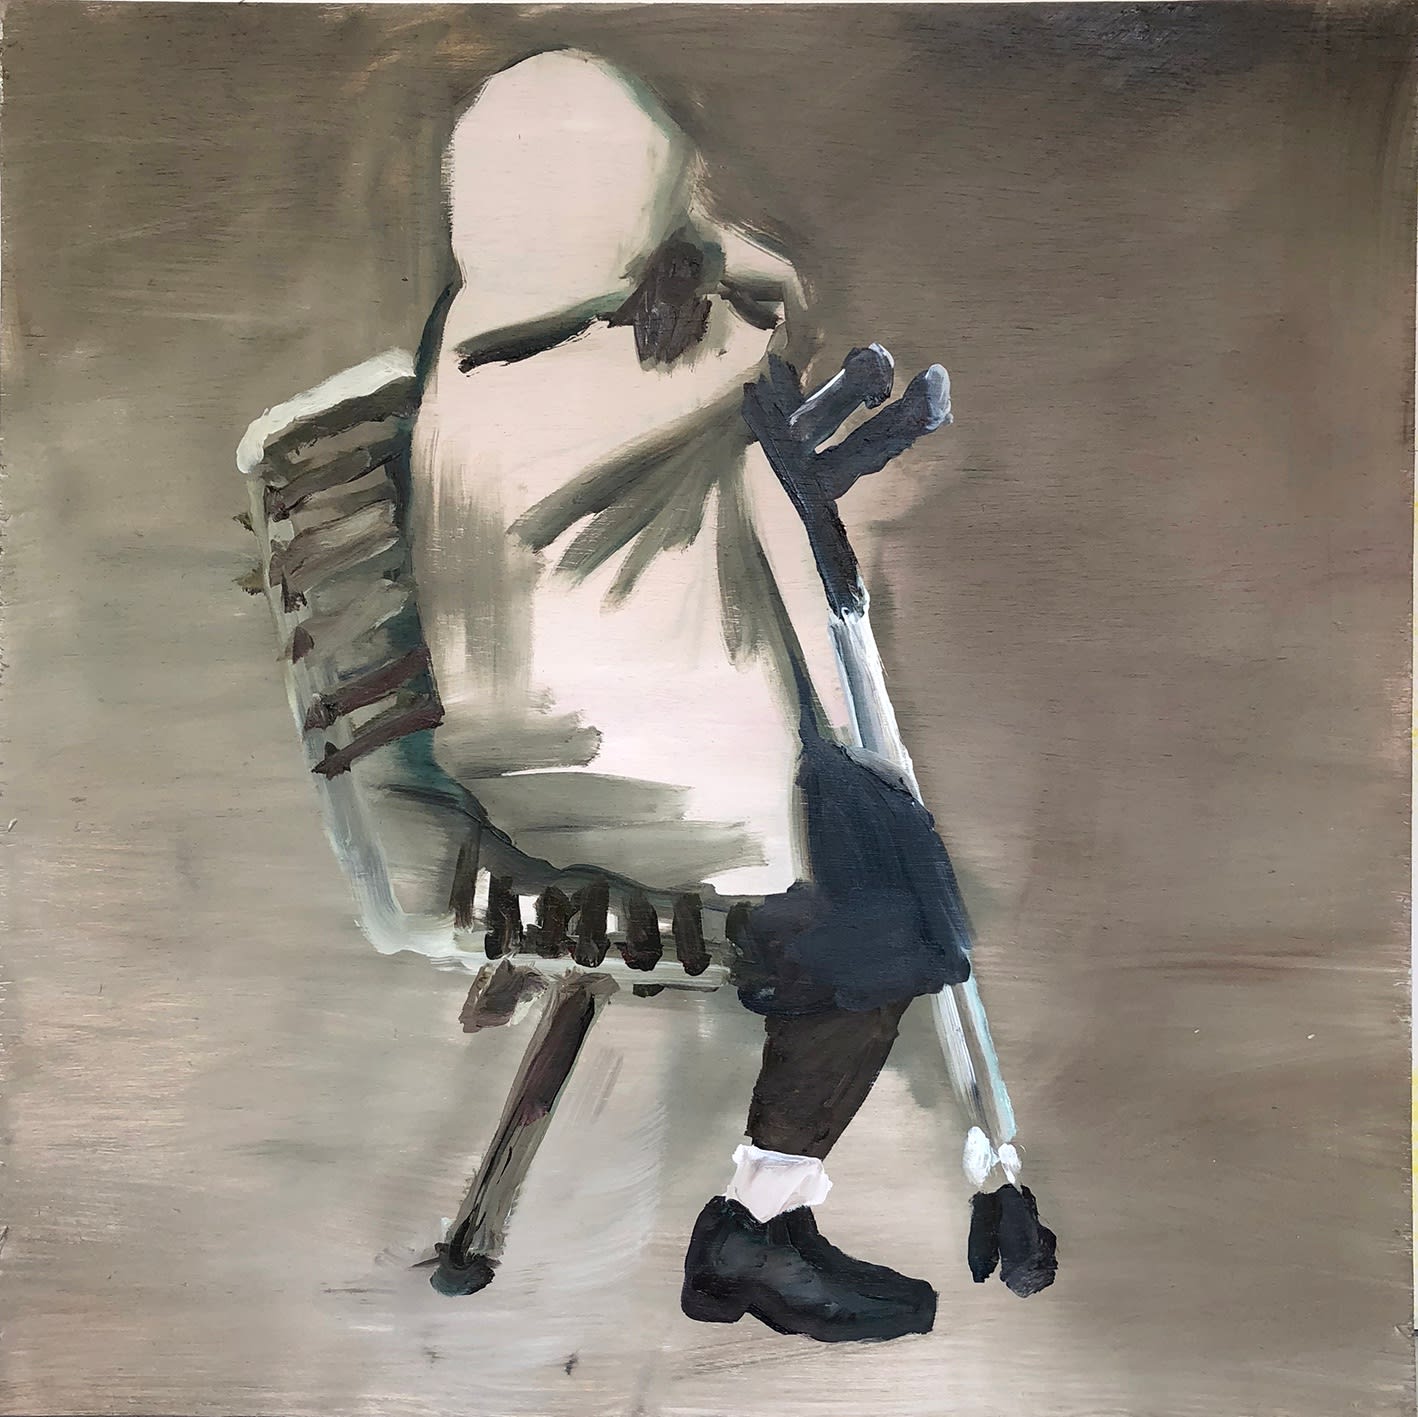 Eduardo Berliner, Muletas [Crutches], 2018